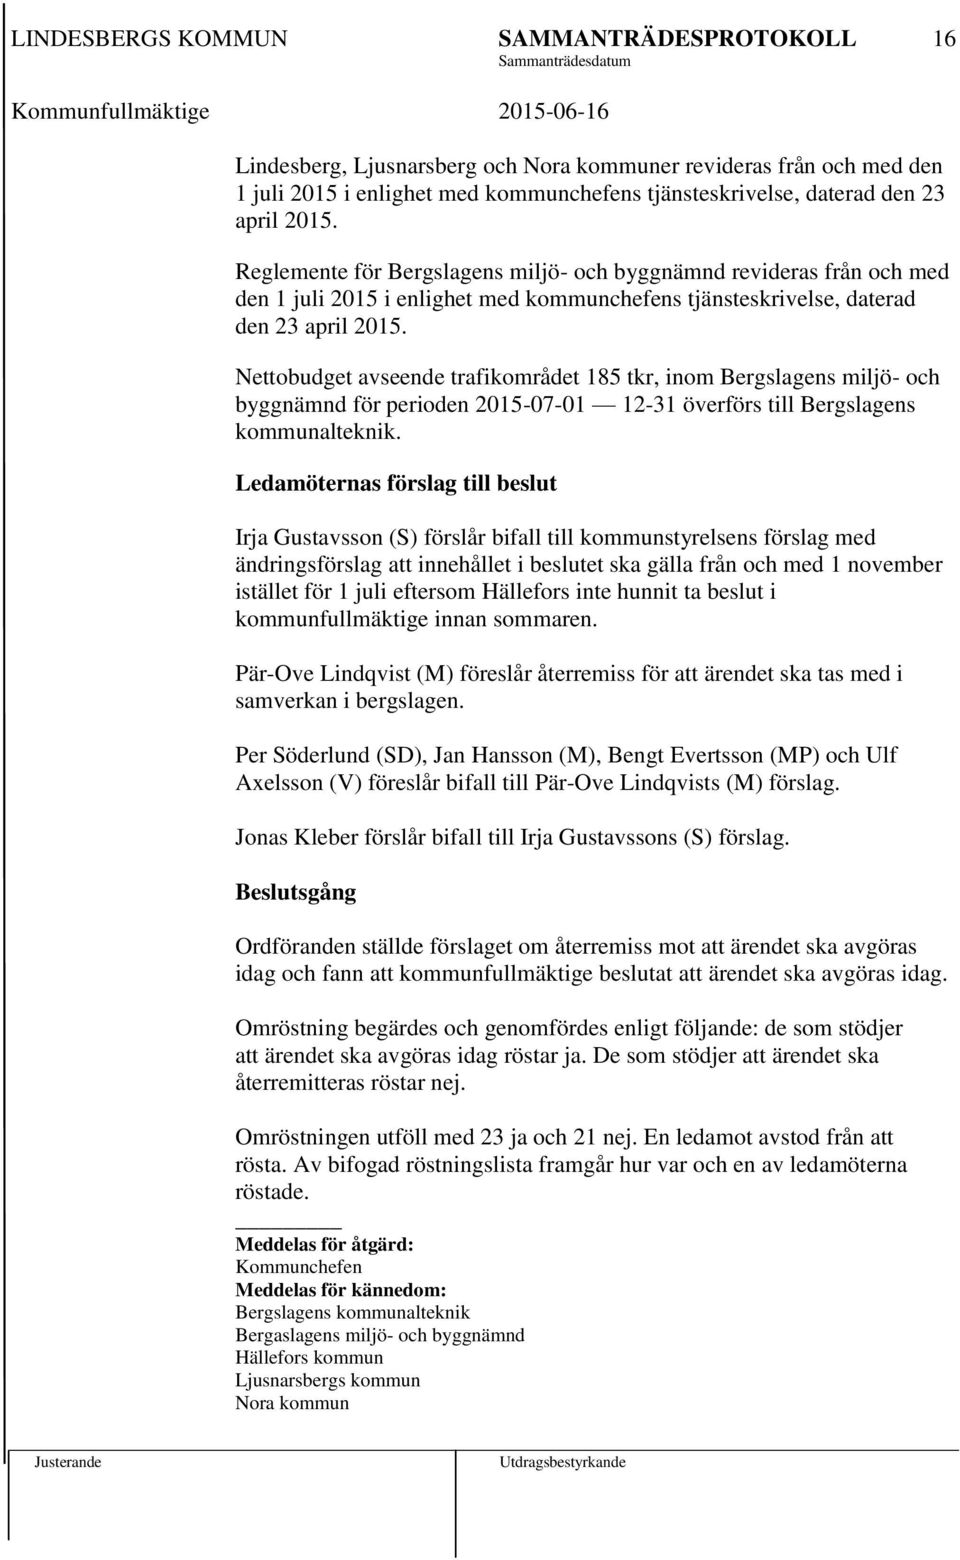 Nettobudget avseende trafikområdet 185 tkr, inom Bergslagens miljö- och byggnämnd för perioden 2015-07-01 12-31 överförs till Bergslagens kommunalteknik.